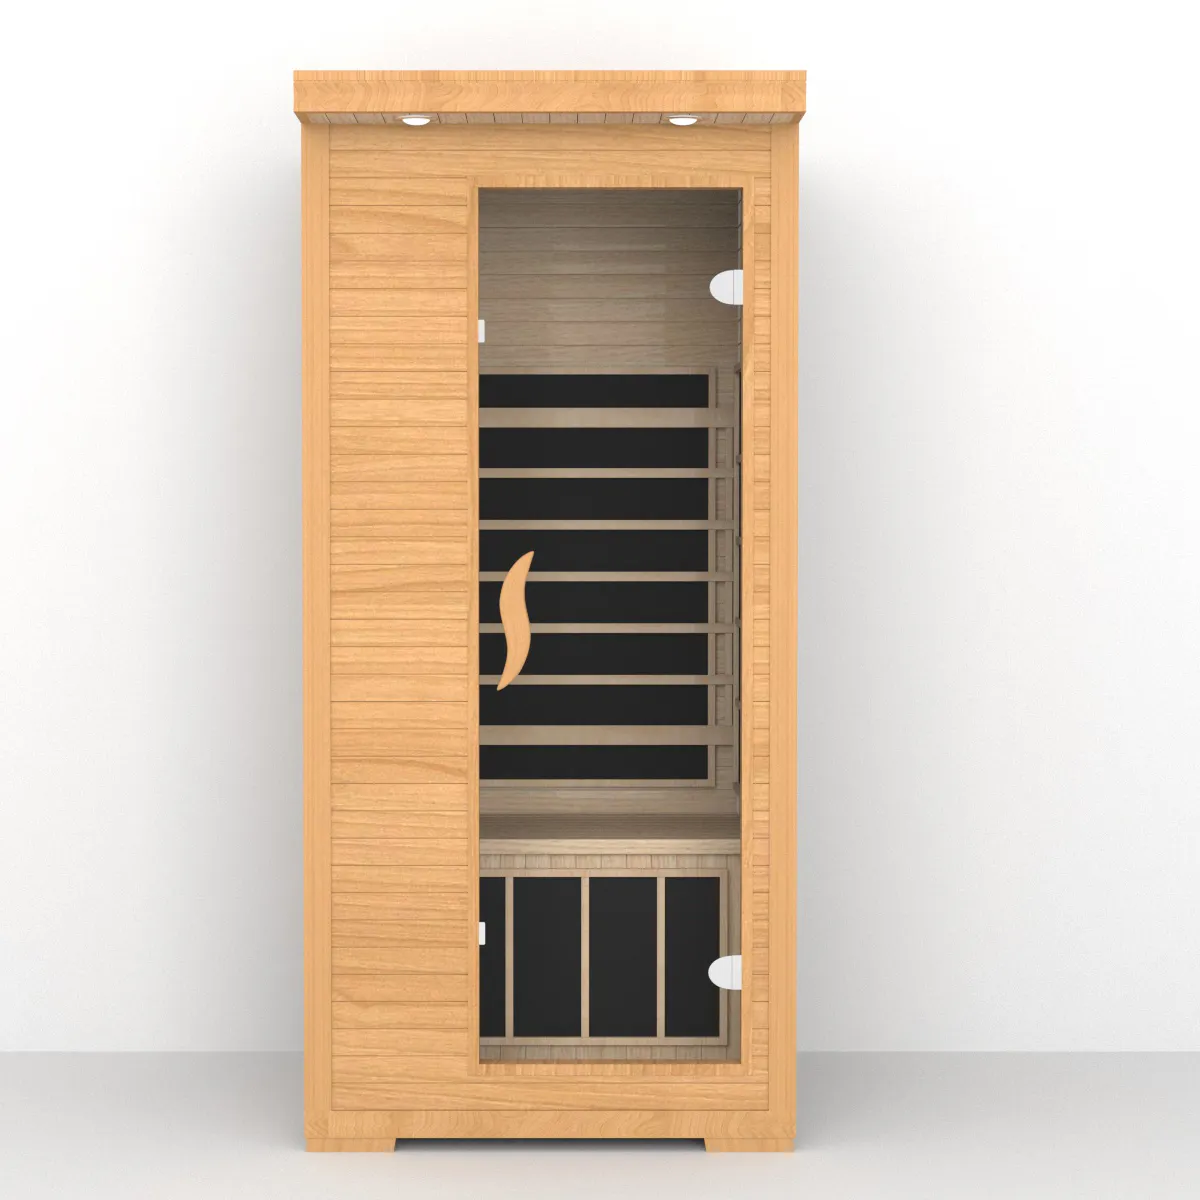 La migliore vendita Sauna secca per la casa per 1 persona in legno massello per interni piccola Sauna a infrarossi